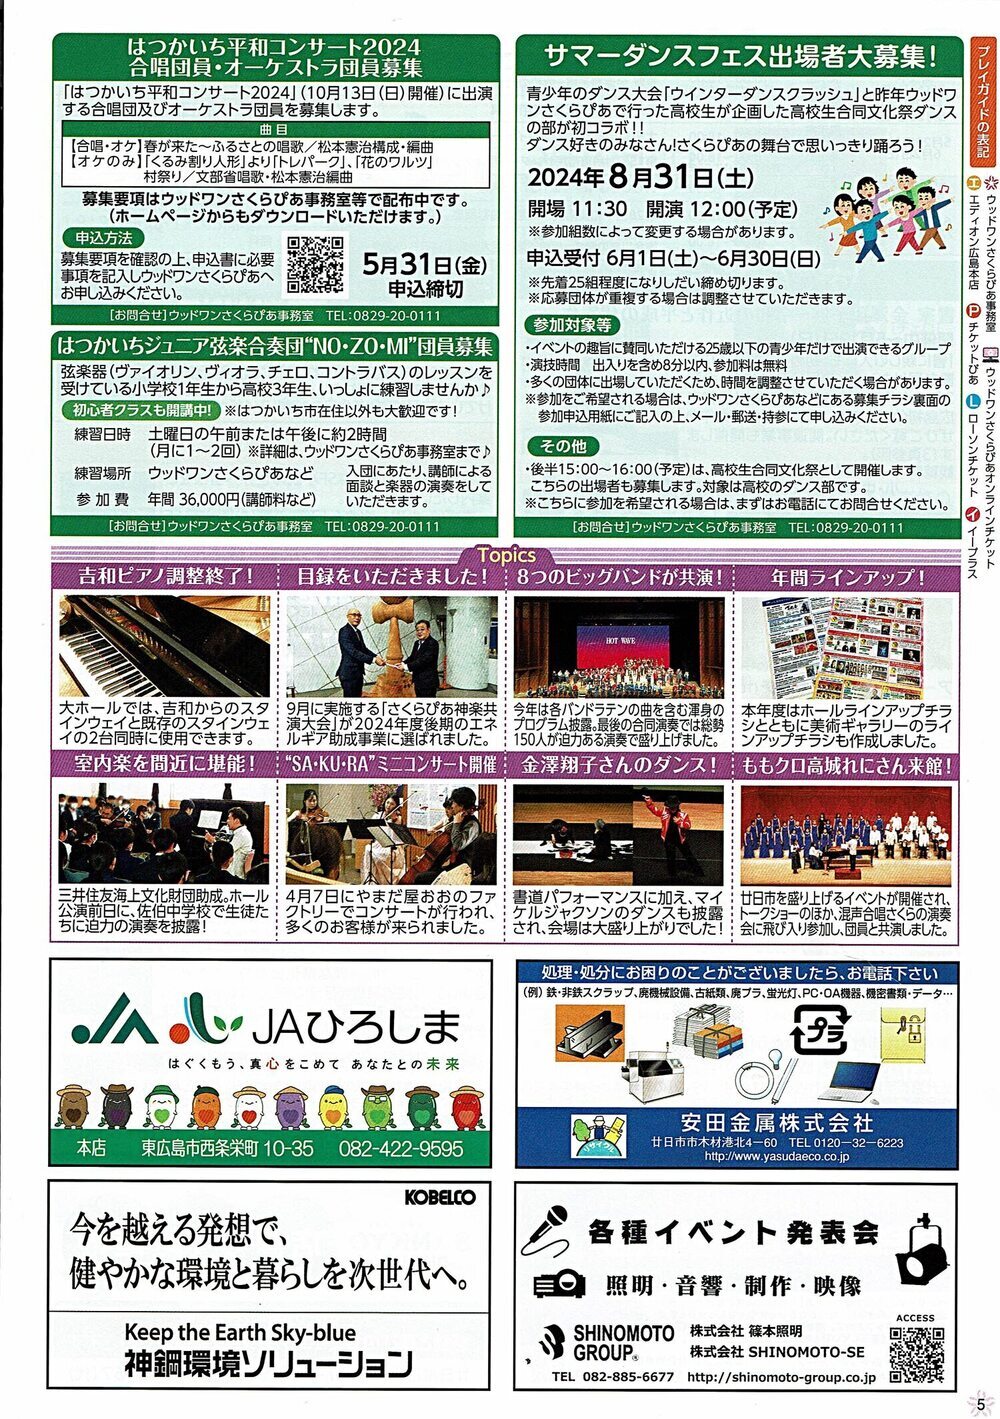 合唱团/管弦乐团成员及舞蹈节参加者招募信息（摘自《Sakupia Monogatari》2024年5月号第5页）